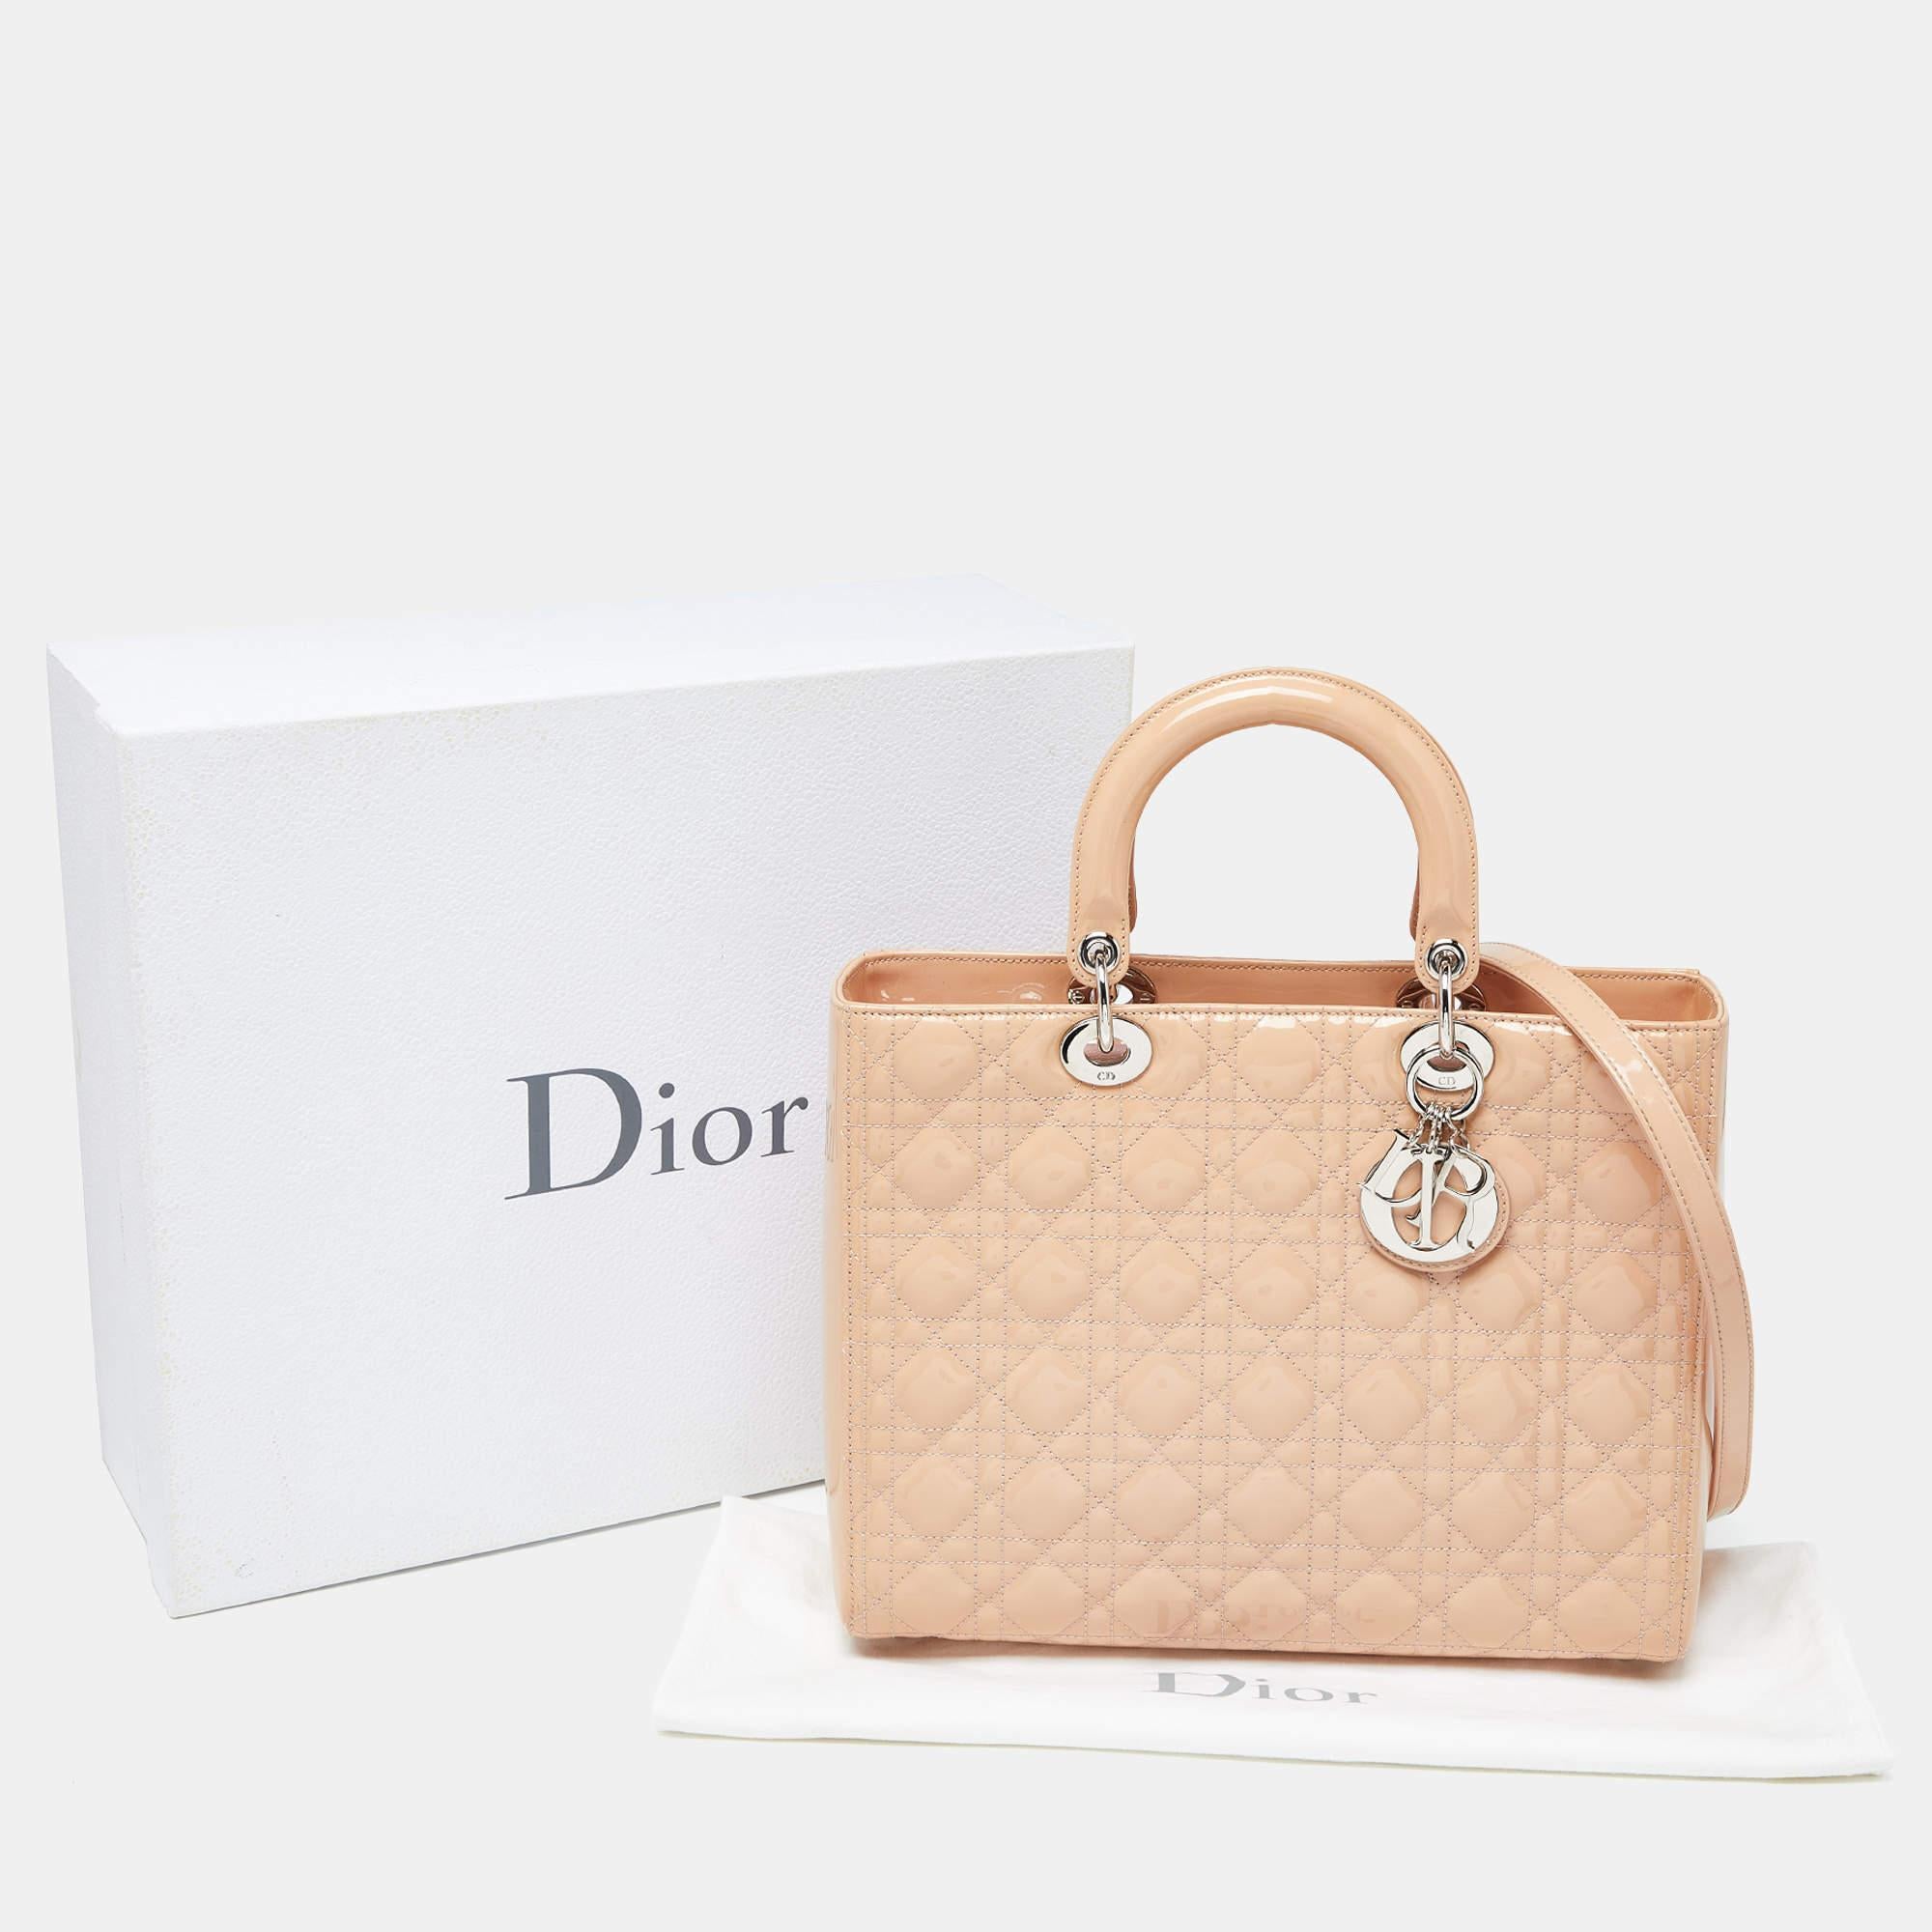 Dior grand sac cabas Lady Dior en cuir verni beige cannage 2